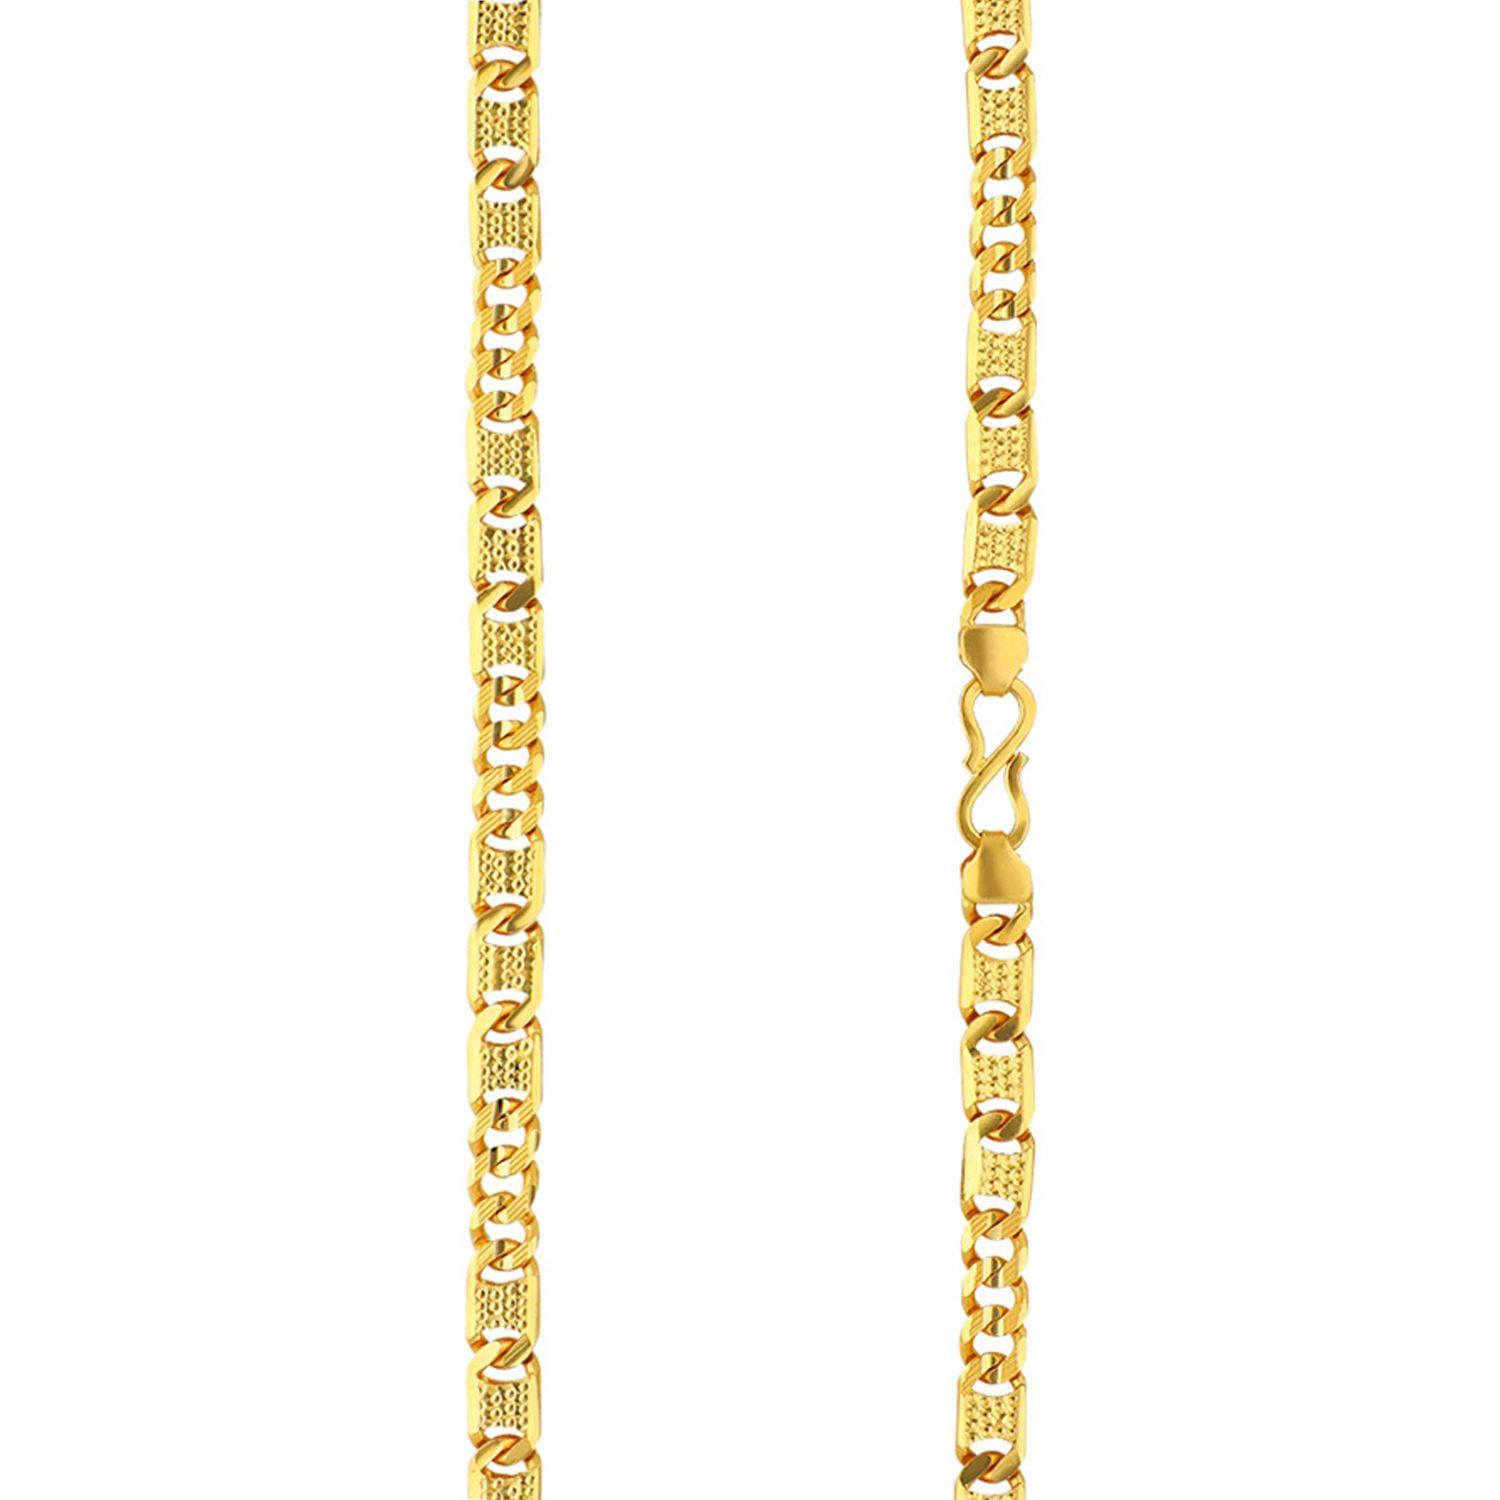 Malabar Gold Chain CHNOB10019